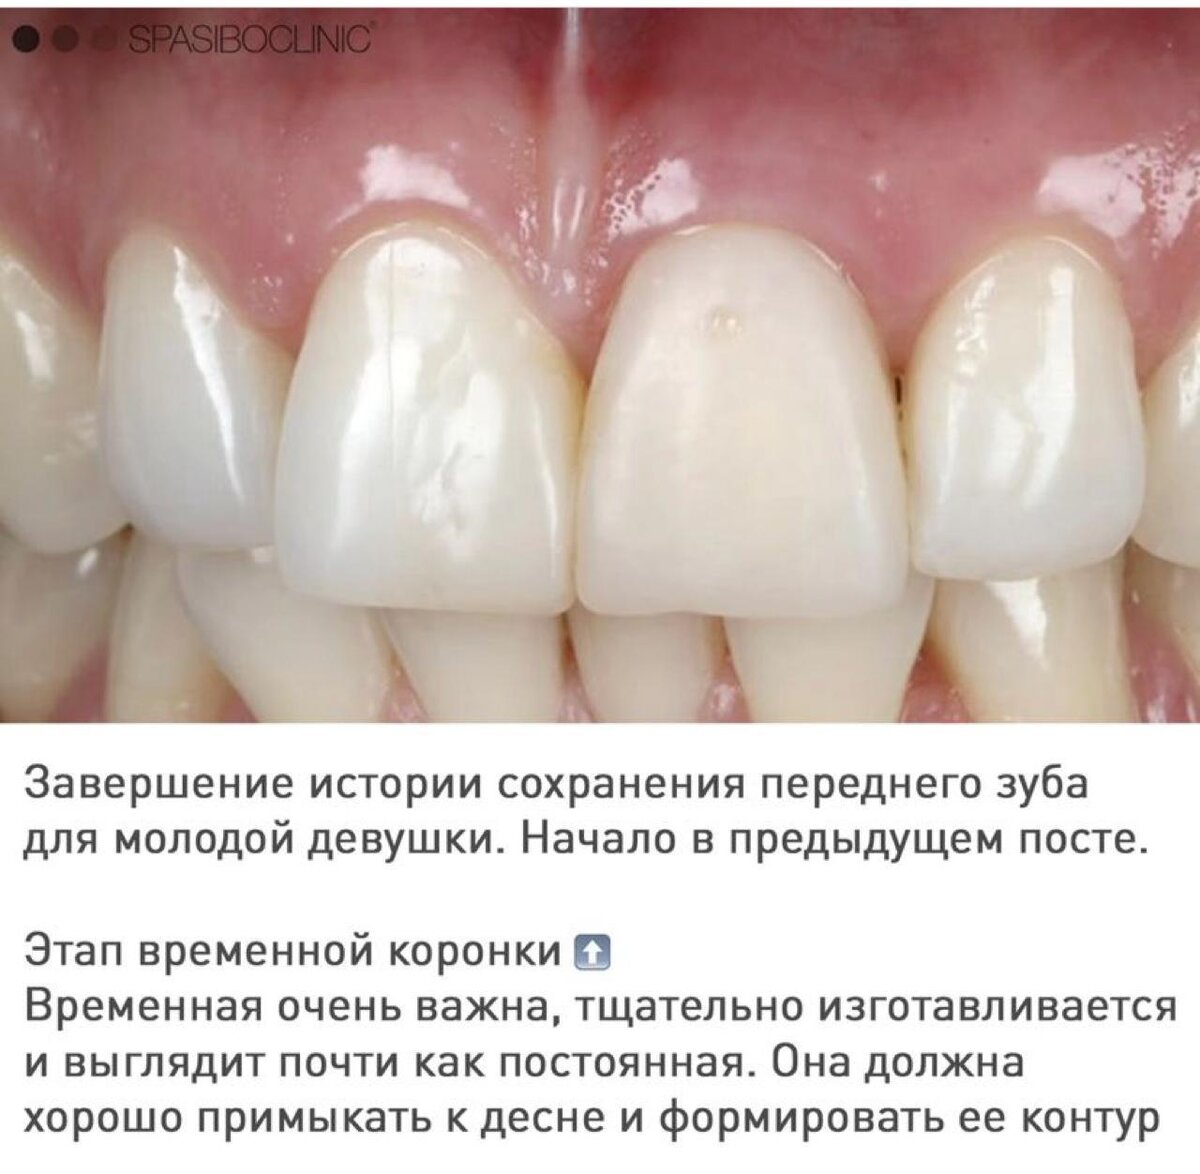 Резорбция шейки переднего зуба у 25-летней девушки: финал лечения.

24 приема в течение 8 месяцев.
Шаг за шагом - чтобы не потерять, а сохранить.-2